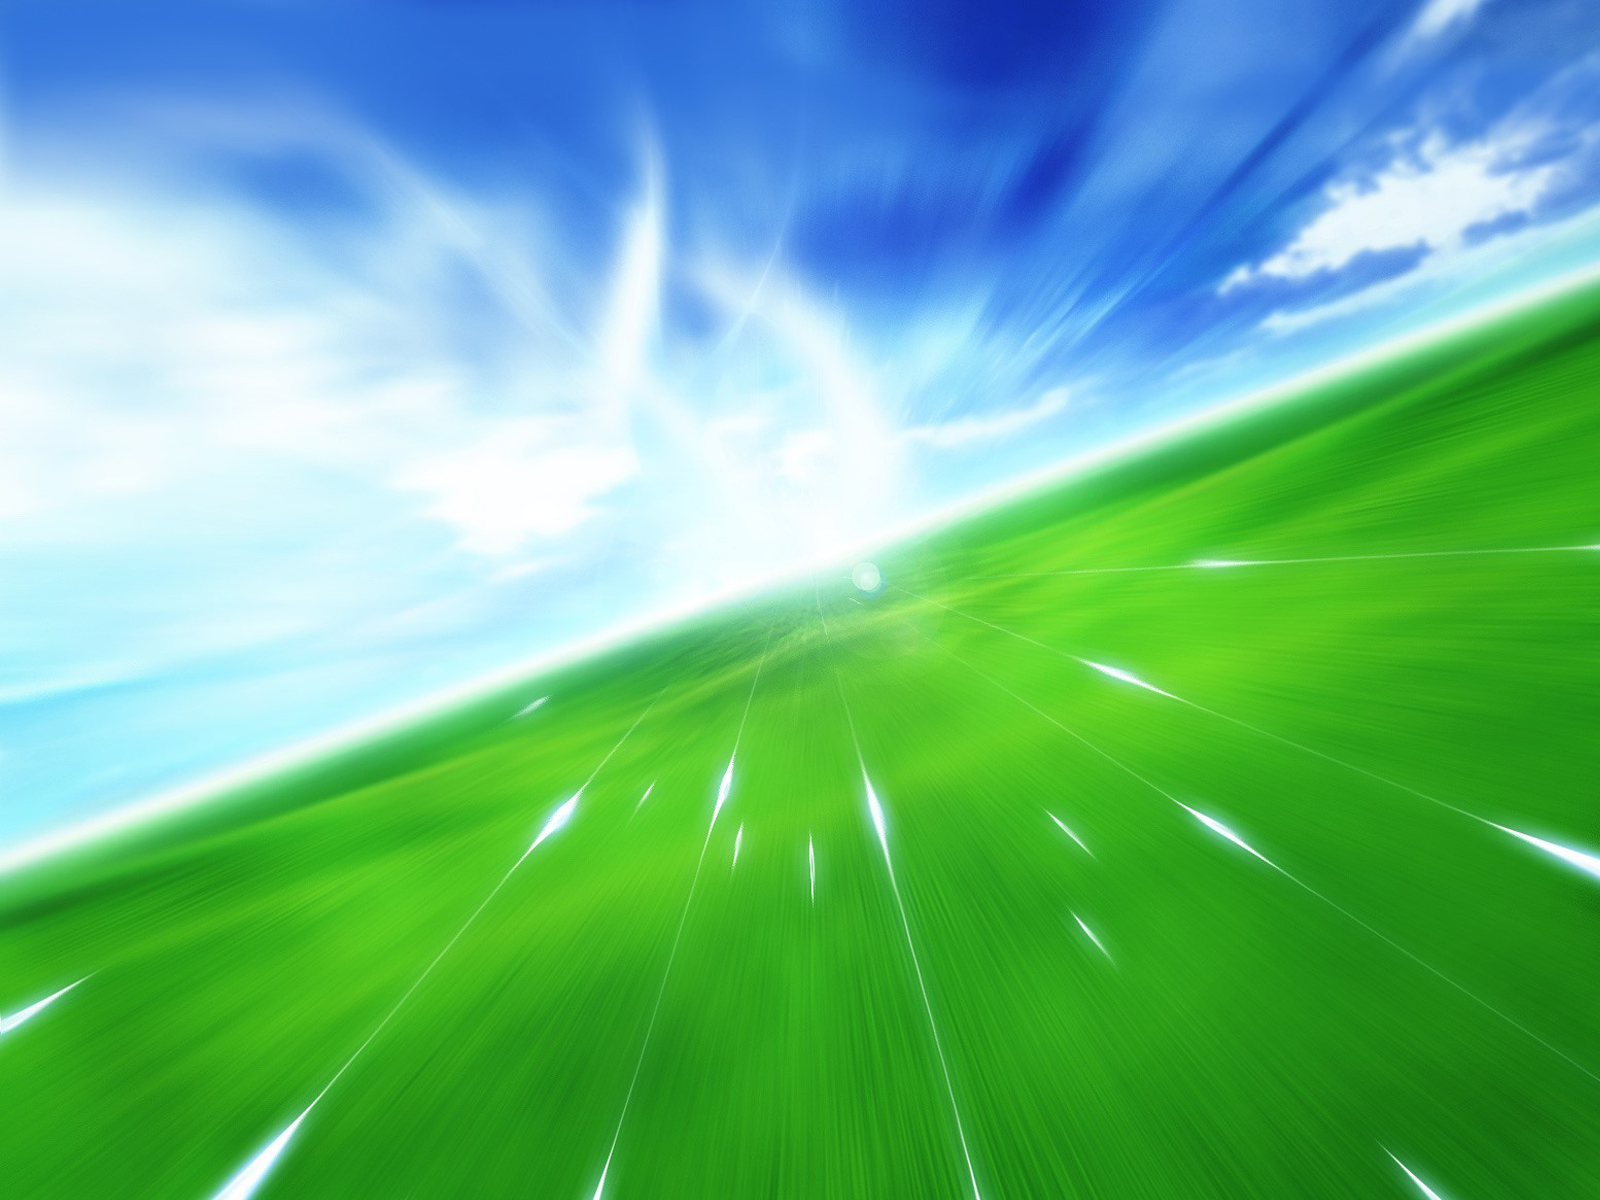 720x1280 tapete zedge,grün,himmel,blau,tagsüber,licht